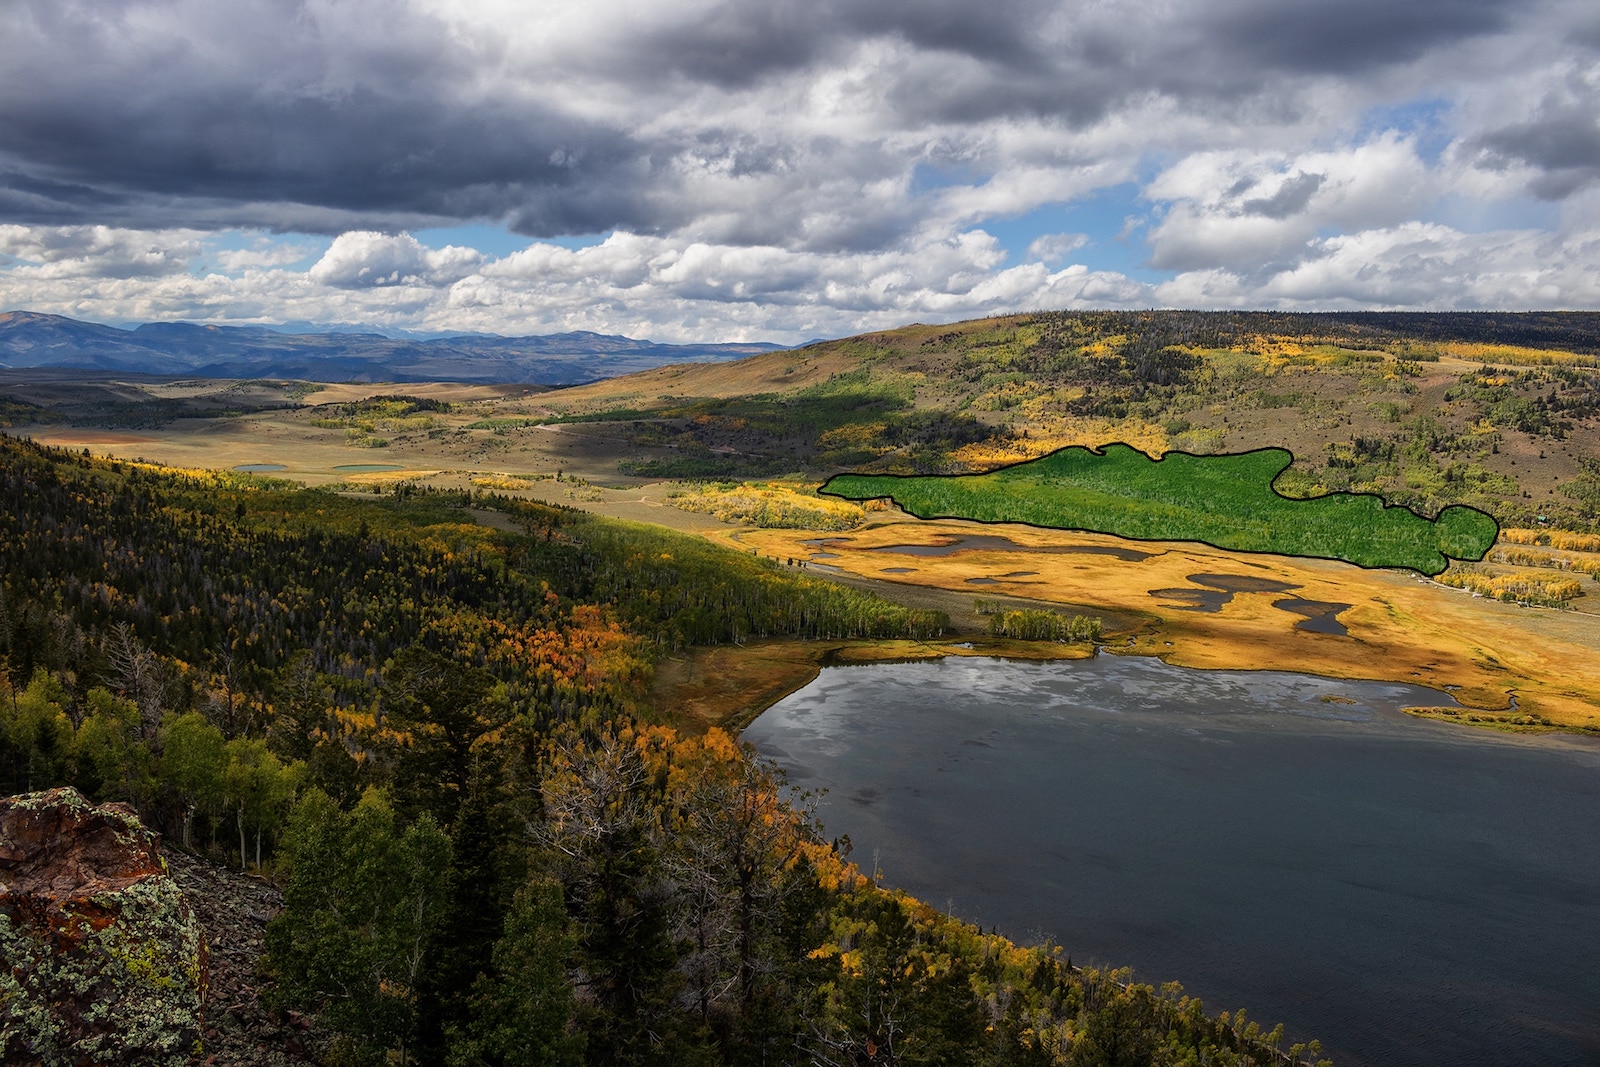 Eine Luftaufnahme eines wunderschönen üppigen Tals voller Bäume, goldener Hügel und eines großen Sees.  Auf der rechten Seite ist ein grün schattiertes Landgebiet die Pando-Landmasse